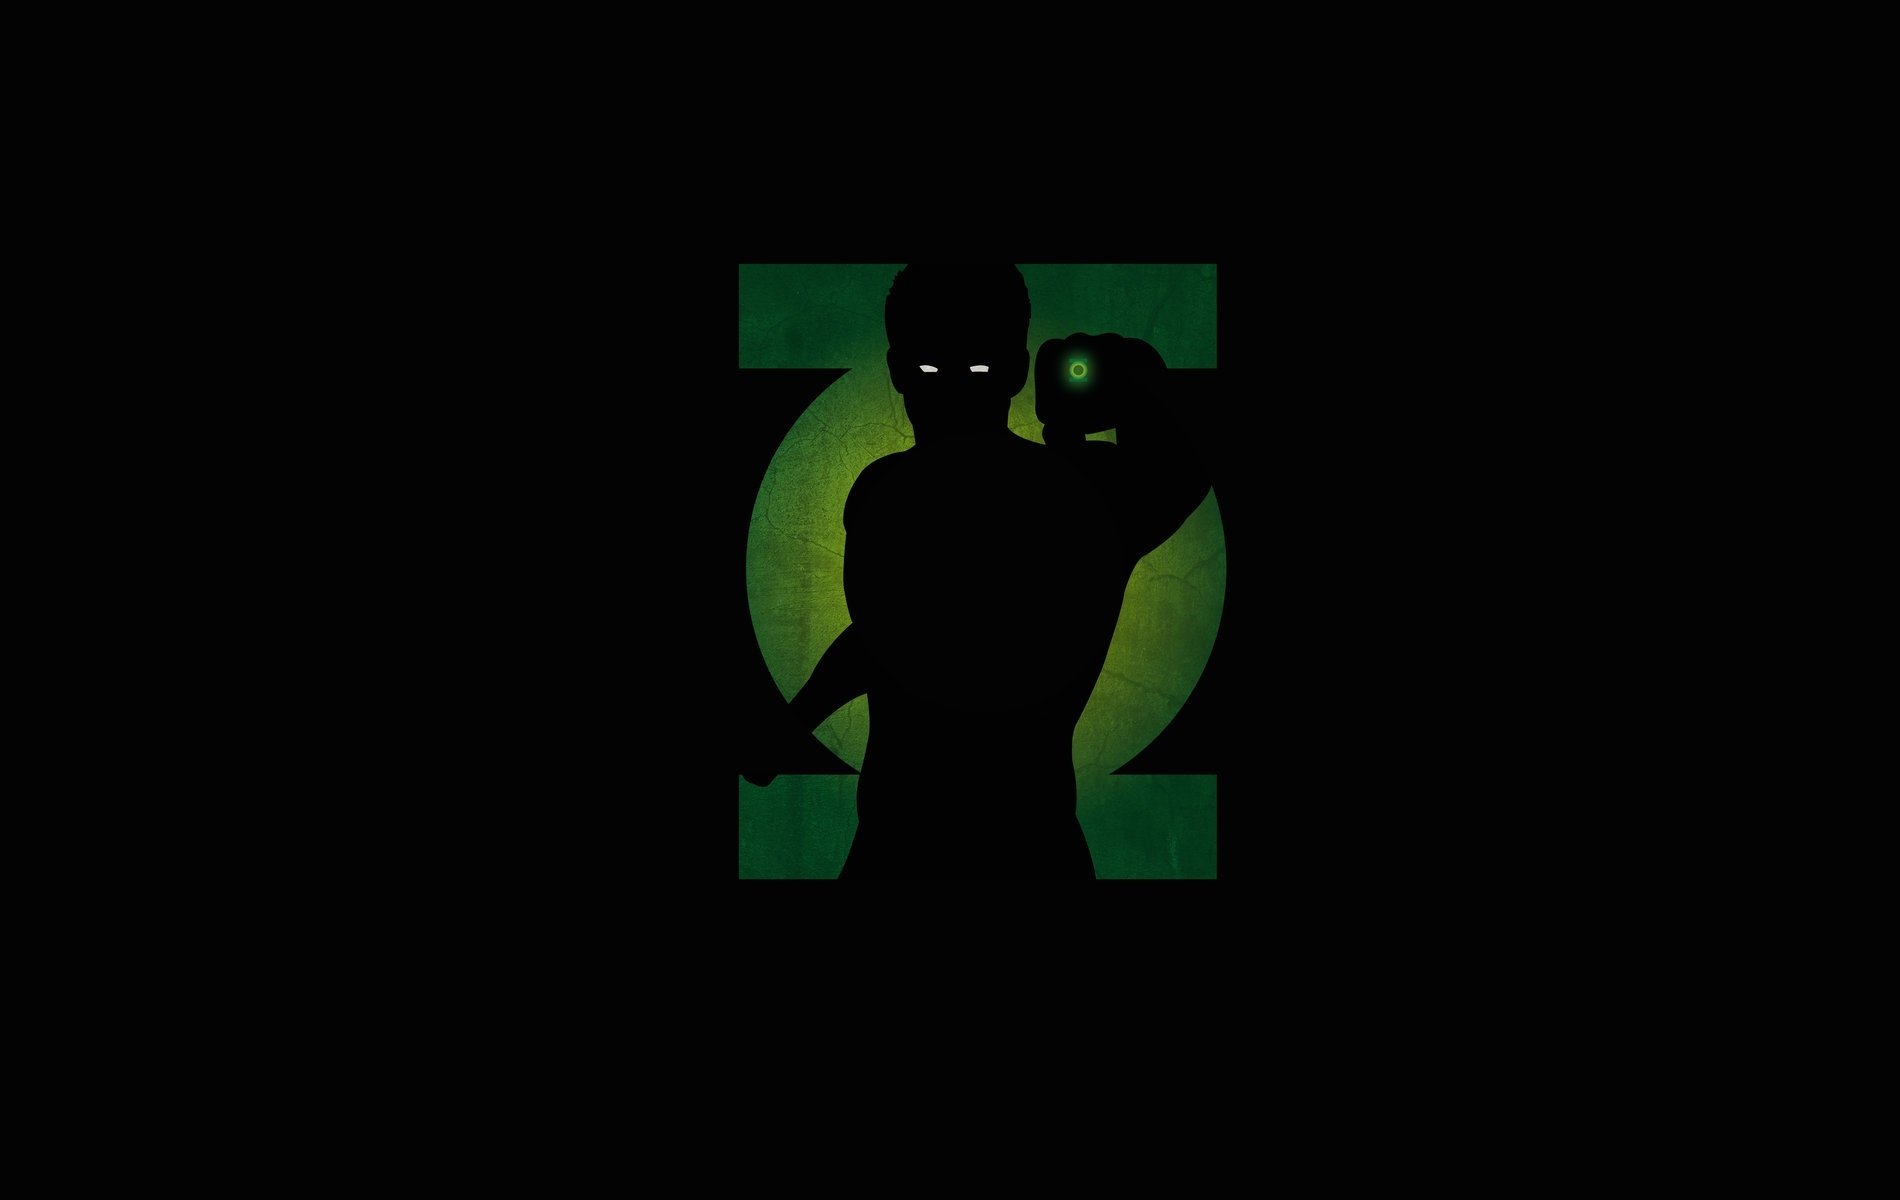 Black Green Lantern Wallpapers